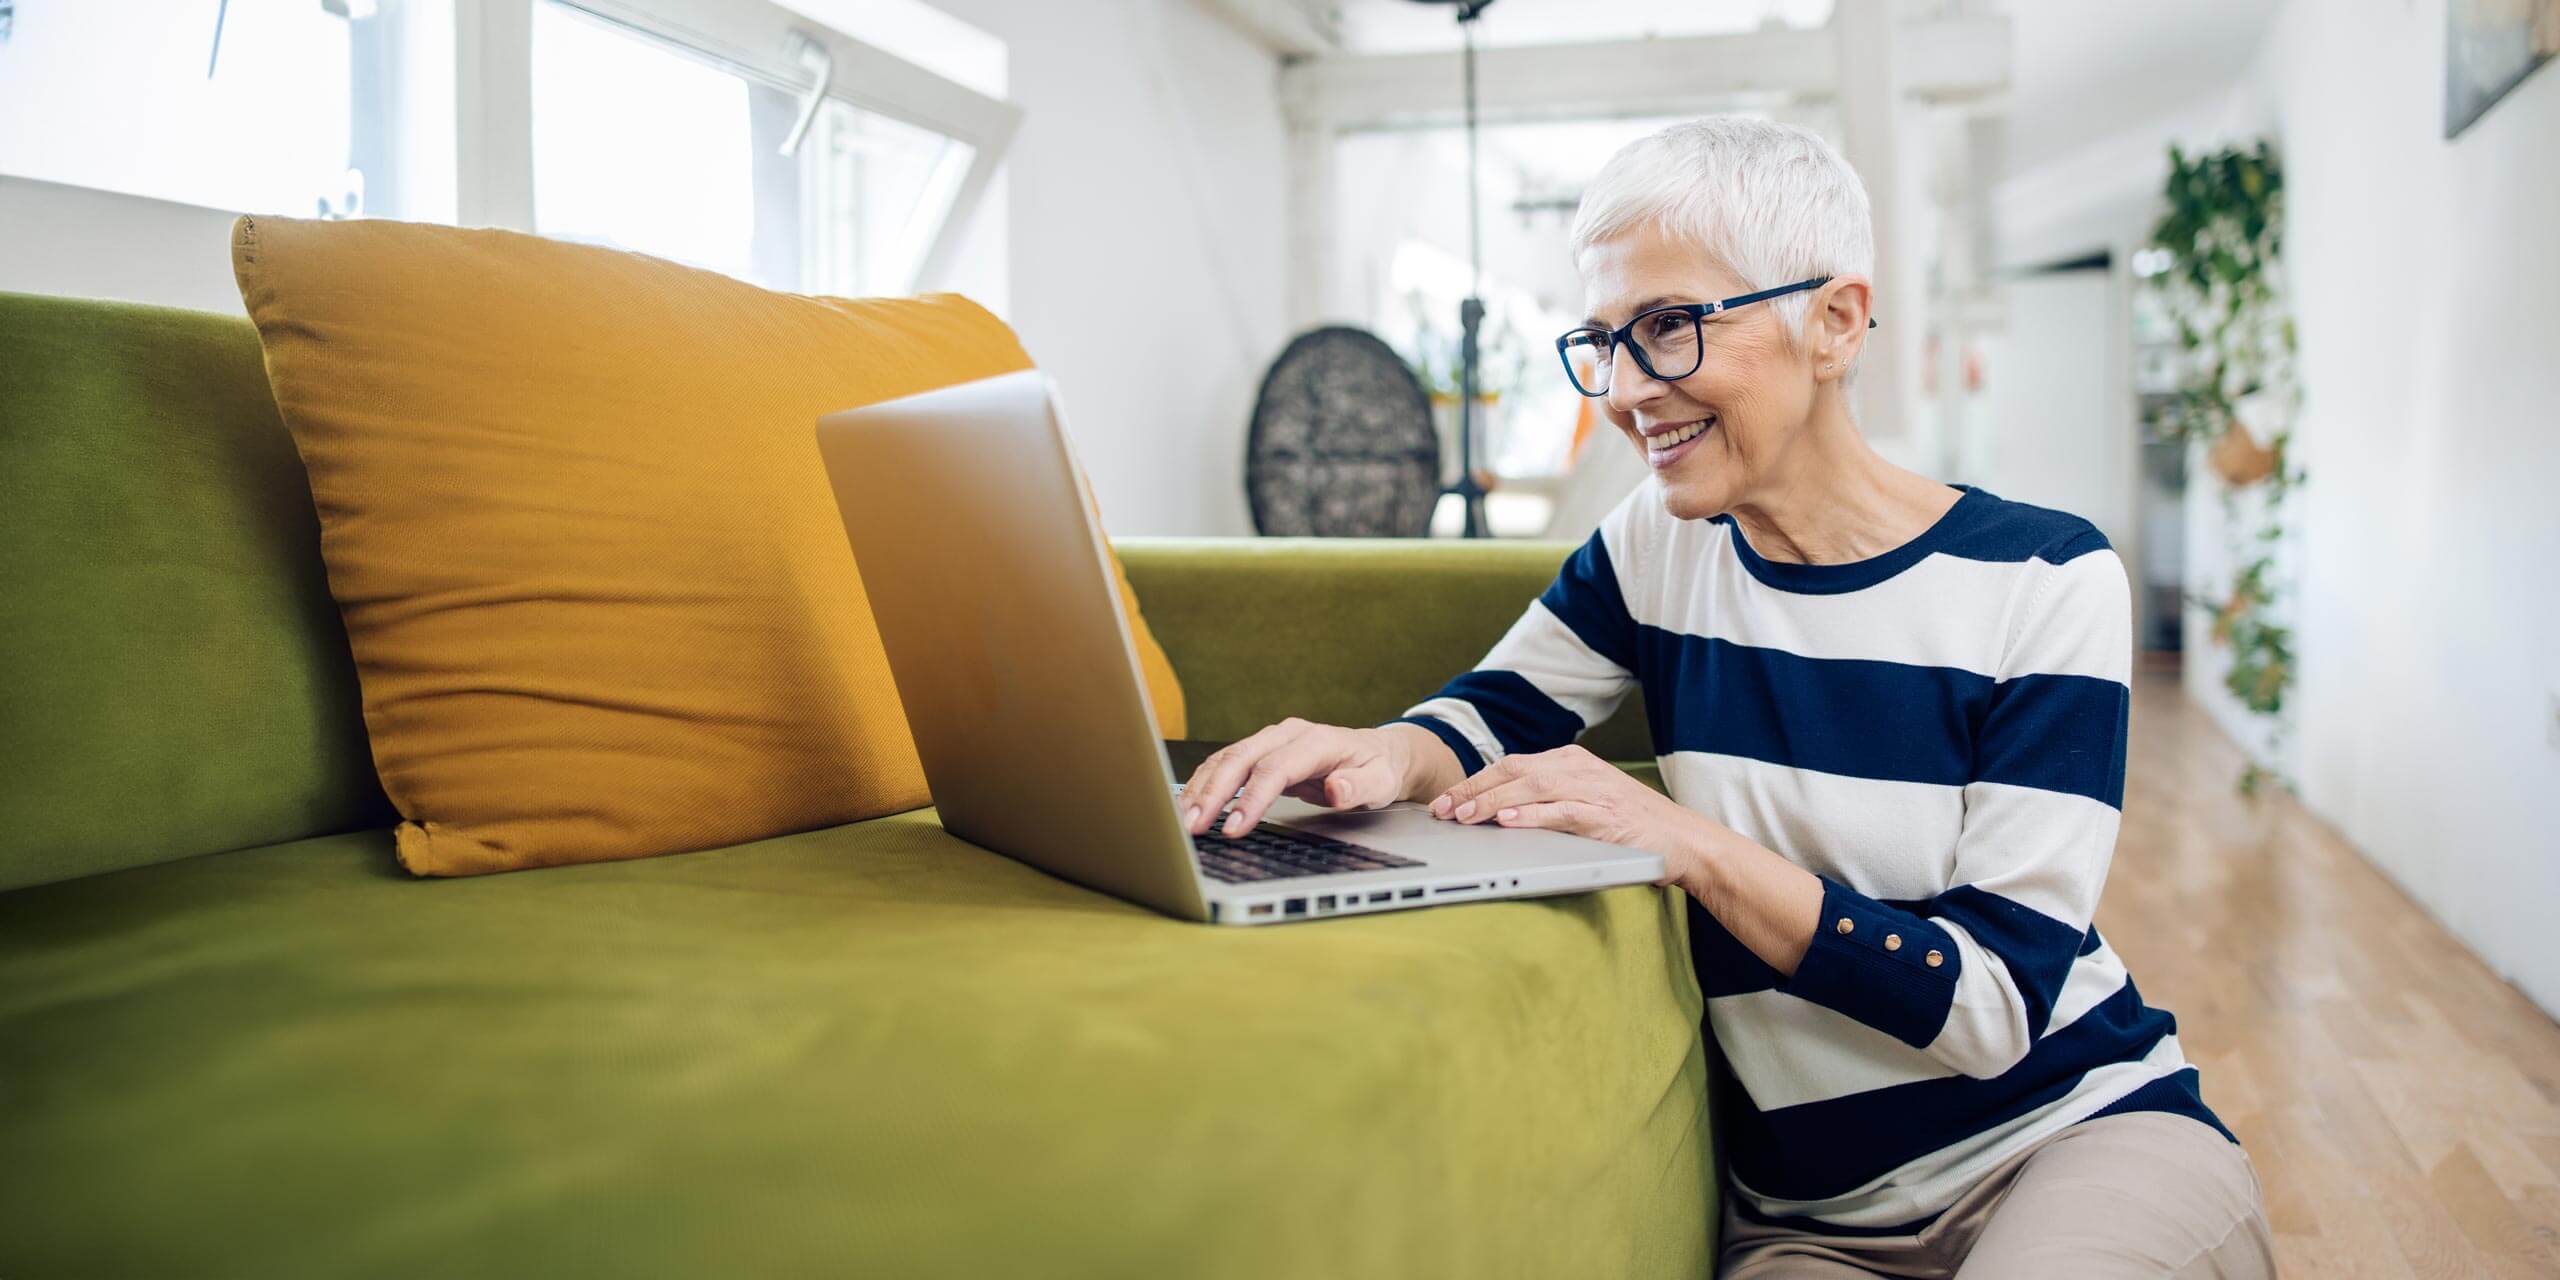 Ältere Frau mit Brille und stylischem Haarschnitt lächelt, während sie zu Hause auf einem grünen Sofa einen Laptop benutzt.